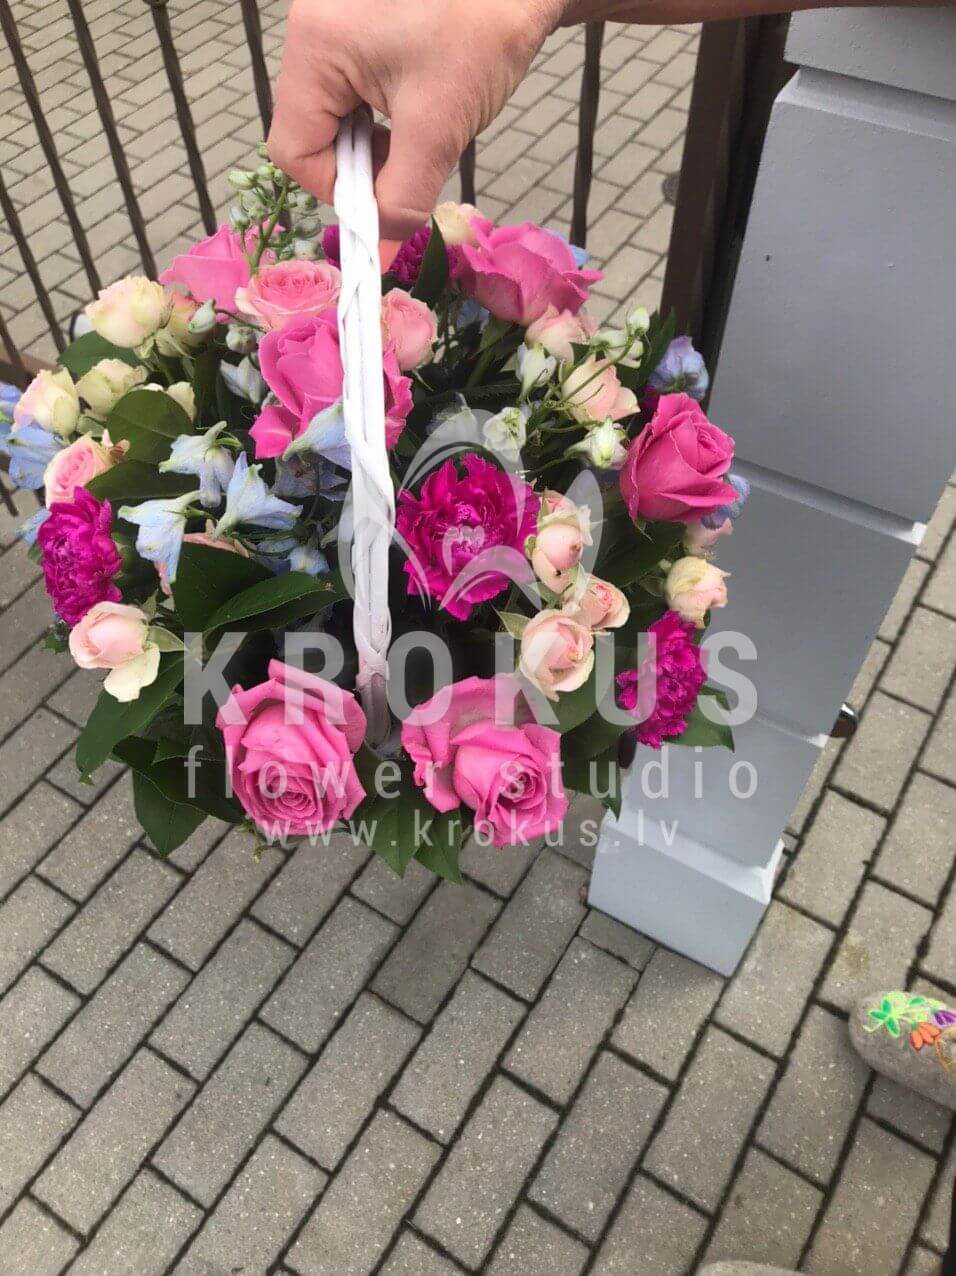 Доставка цветов в город Baloži (кустовые розырозовые розыгвоздикиваксфлауэрстатицасалал)